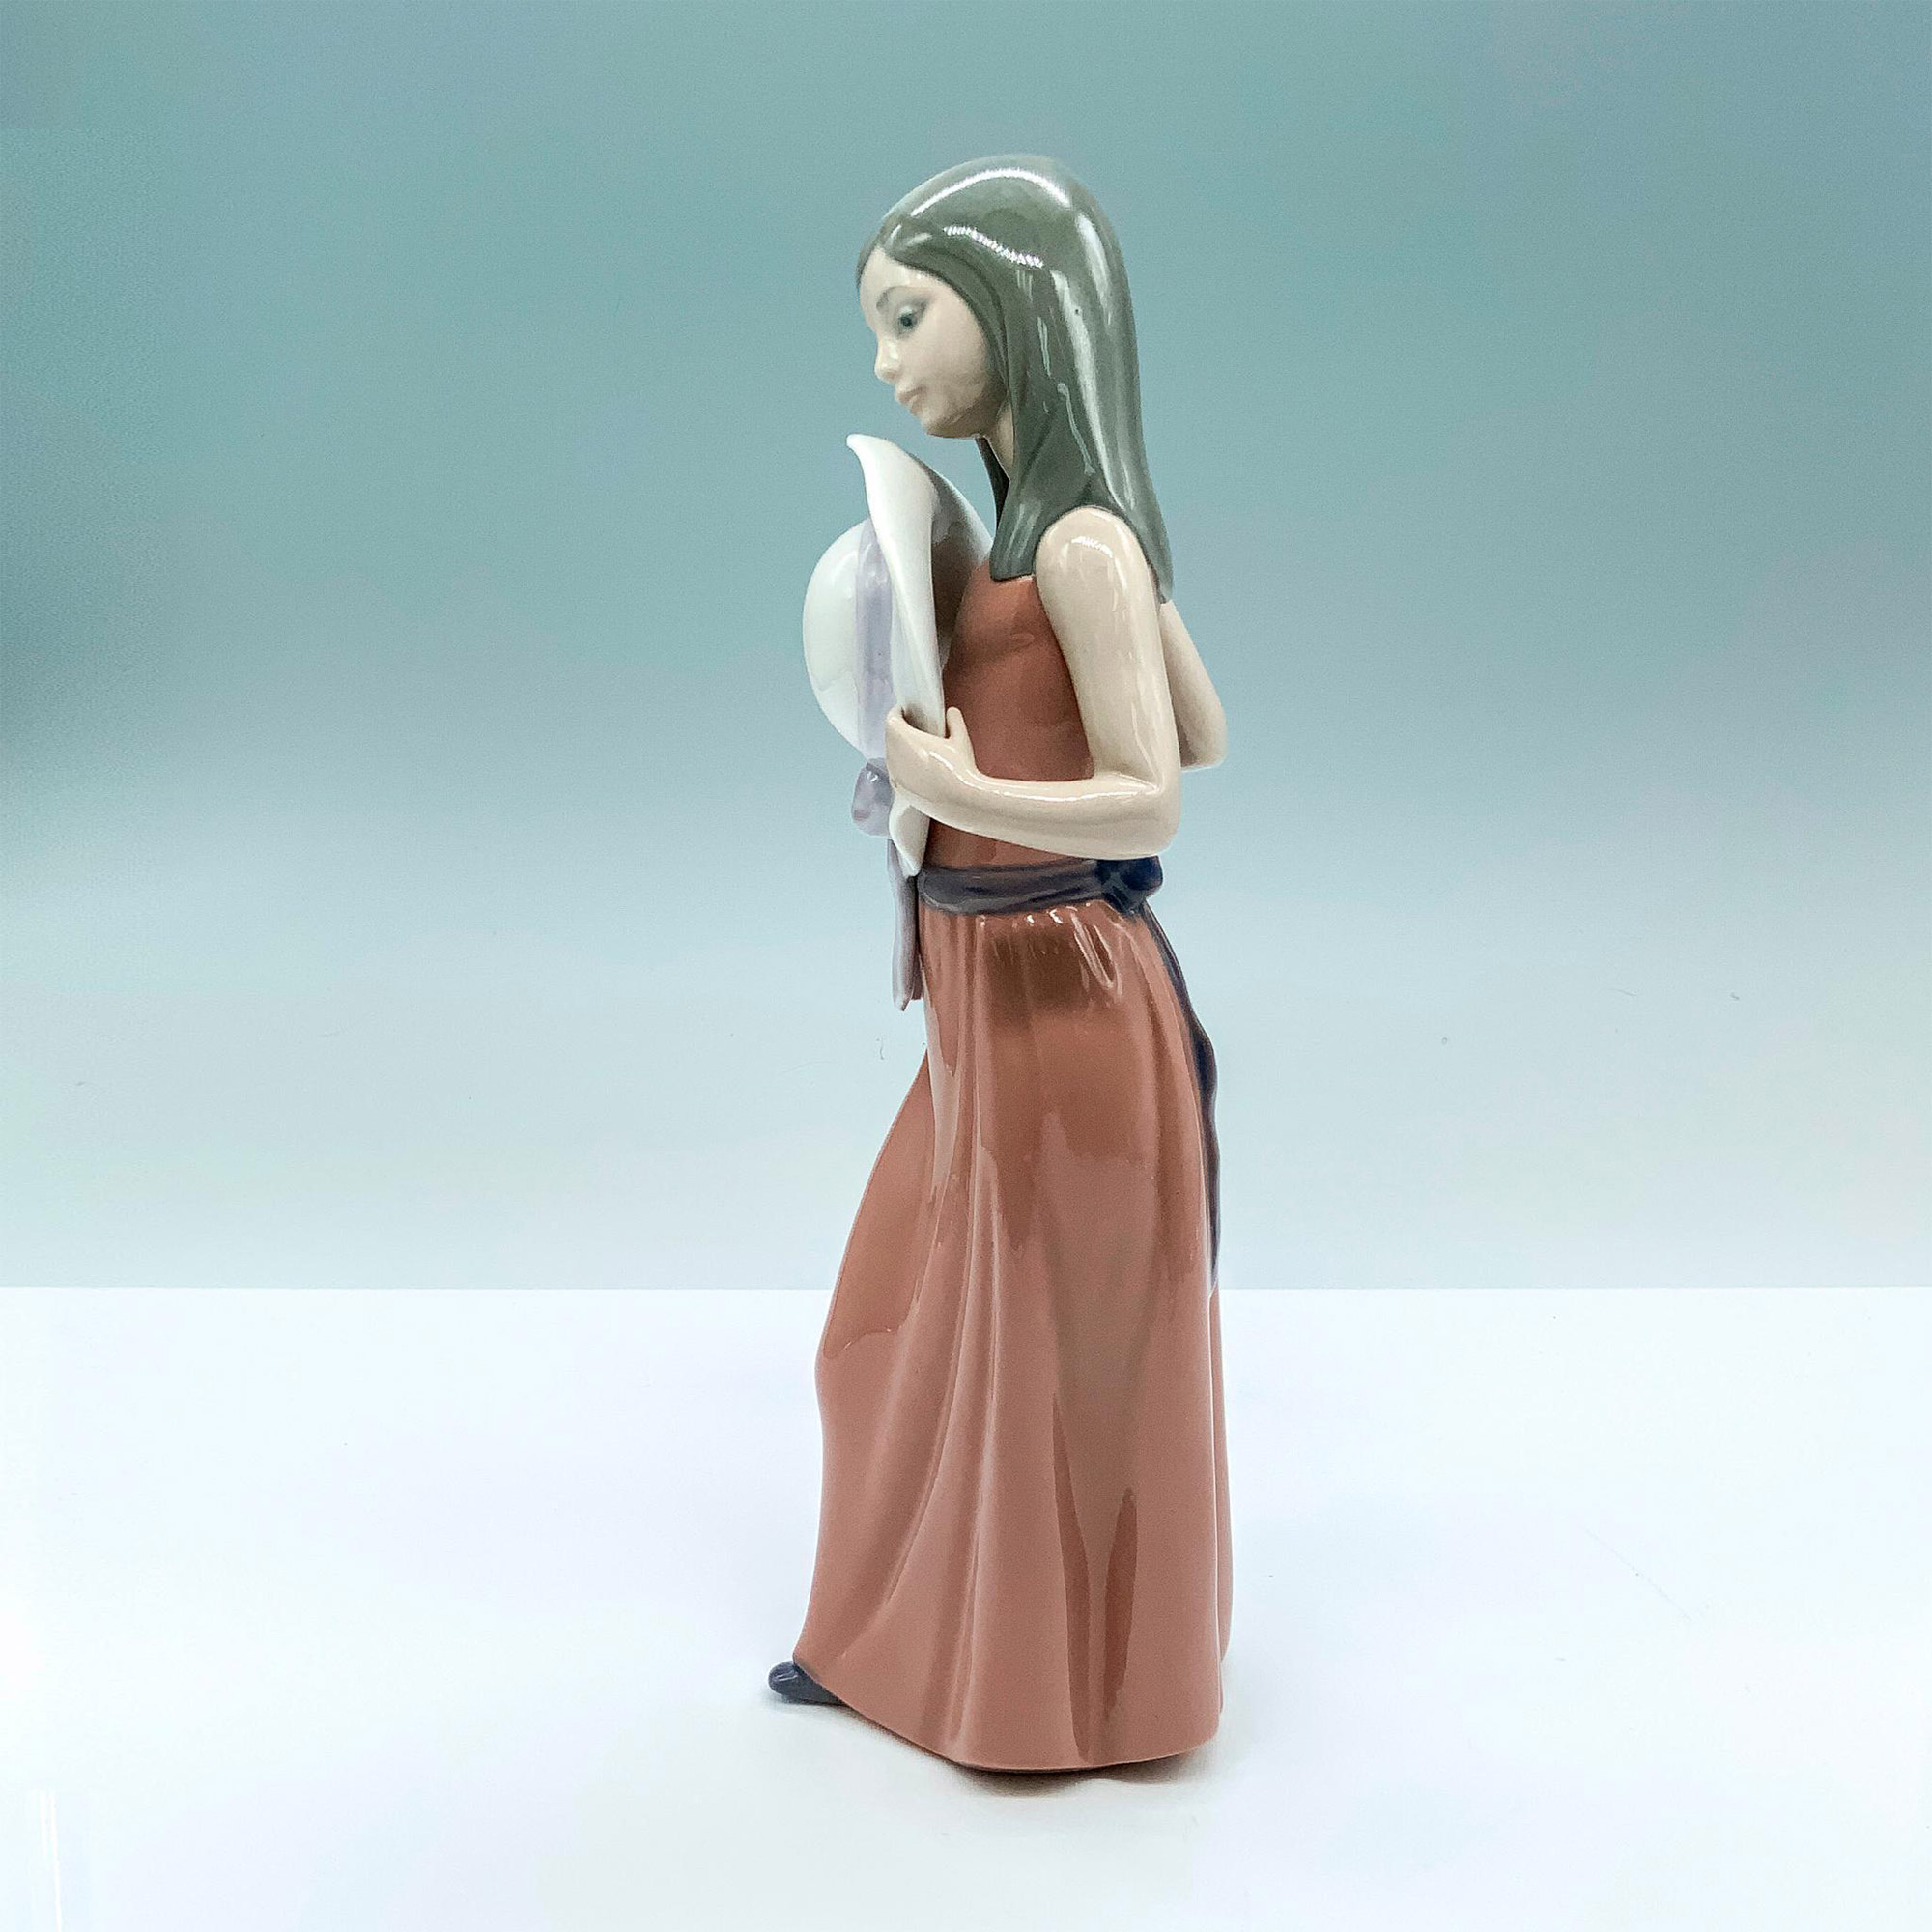 Bashful 1005007 - Lladro Porcelain Figurine - Image 2 of 5